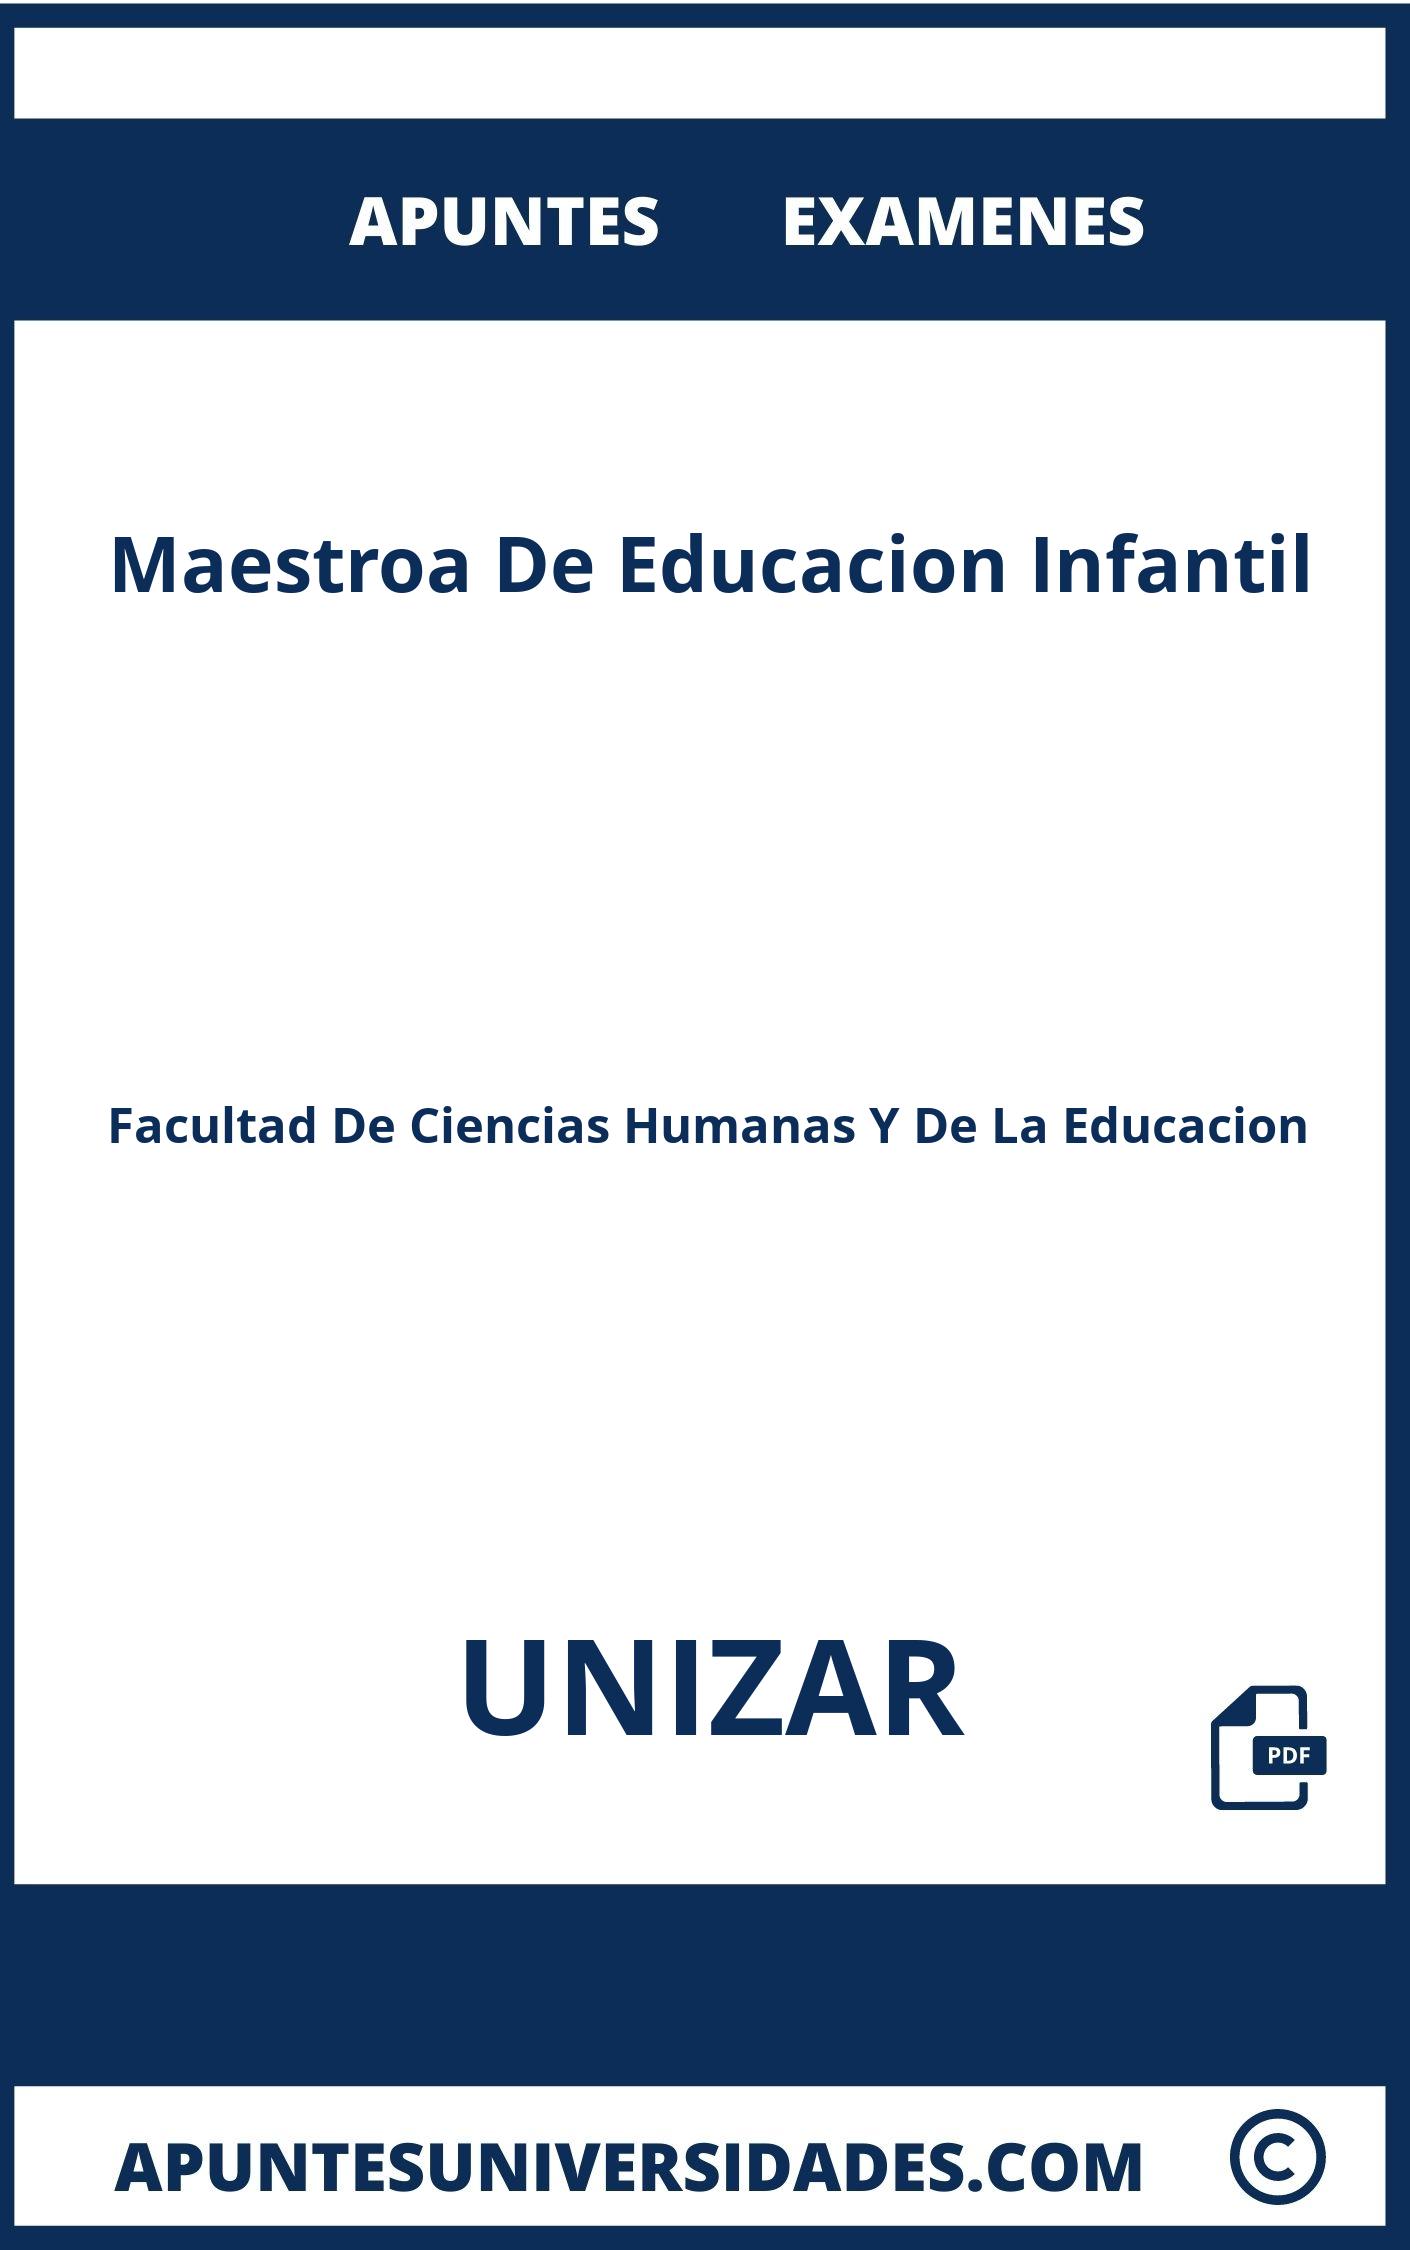 Apuntes y Examenes Maestroa De Educacion Infantil UNIZAR